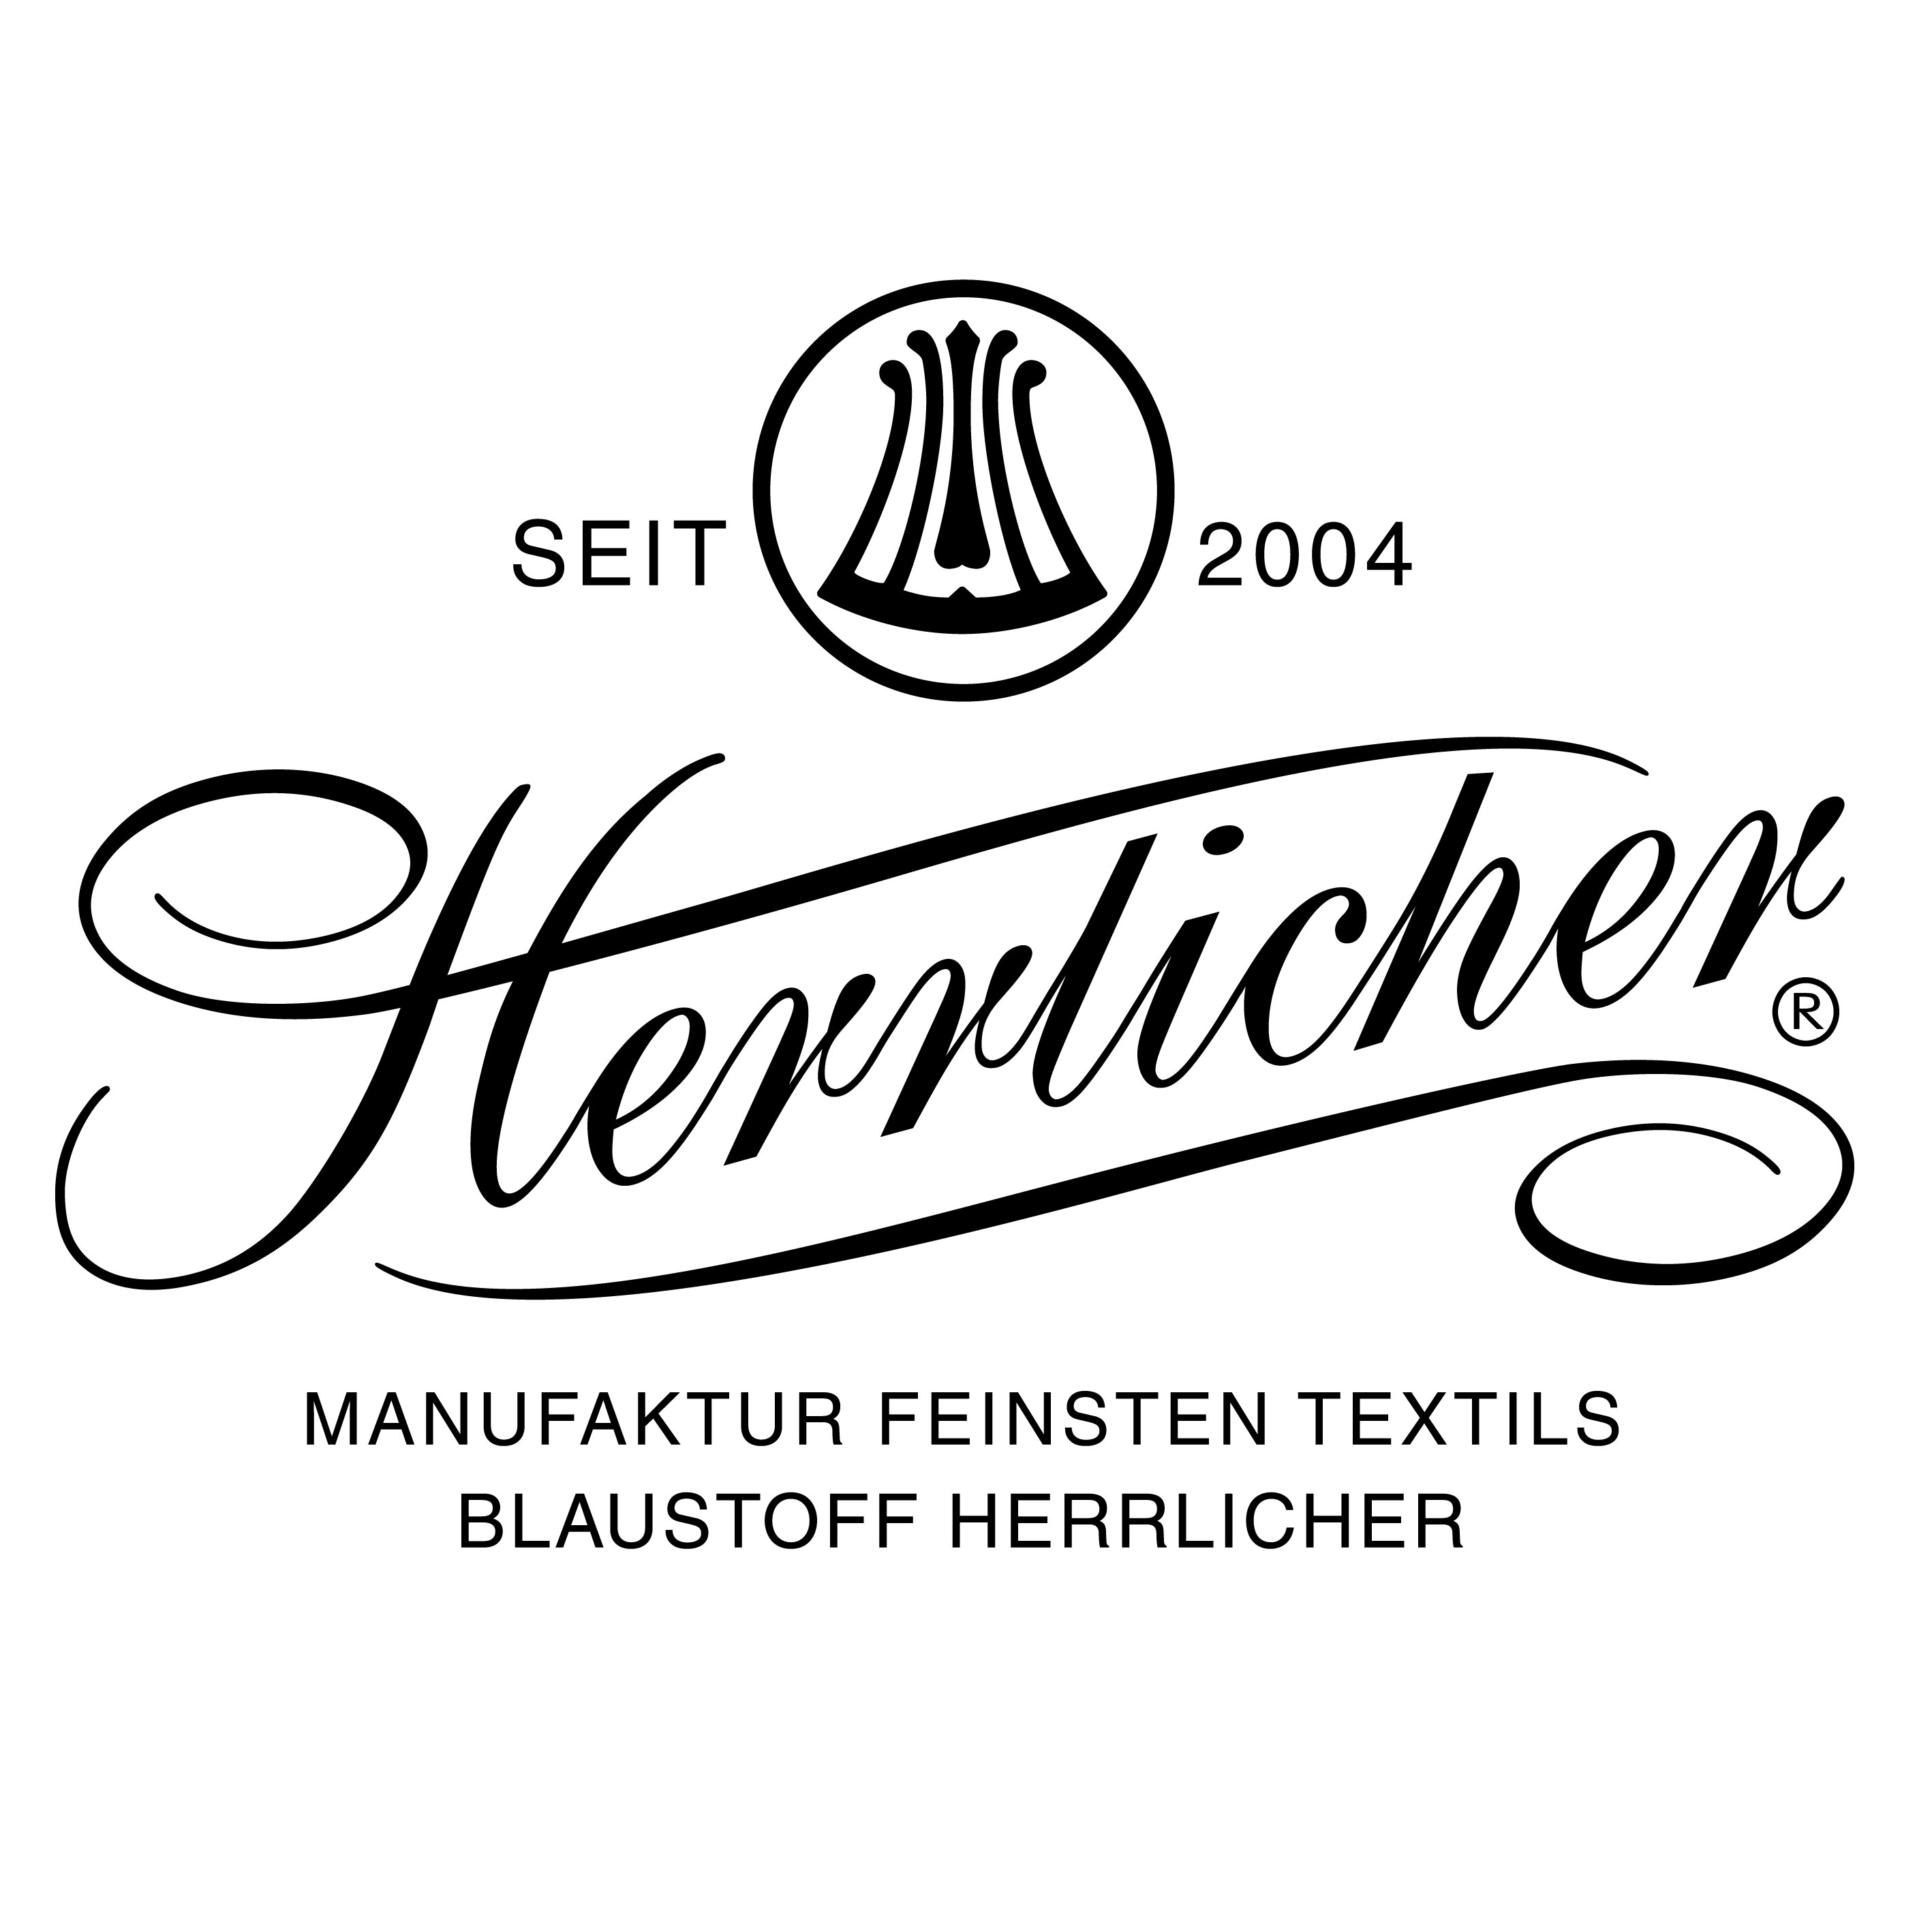 herrlicher_logo.jpg